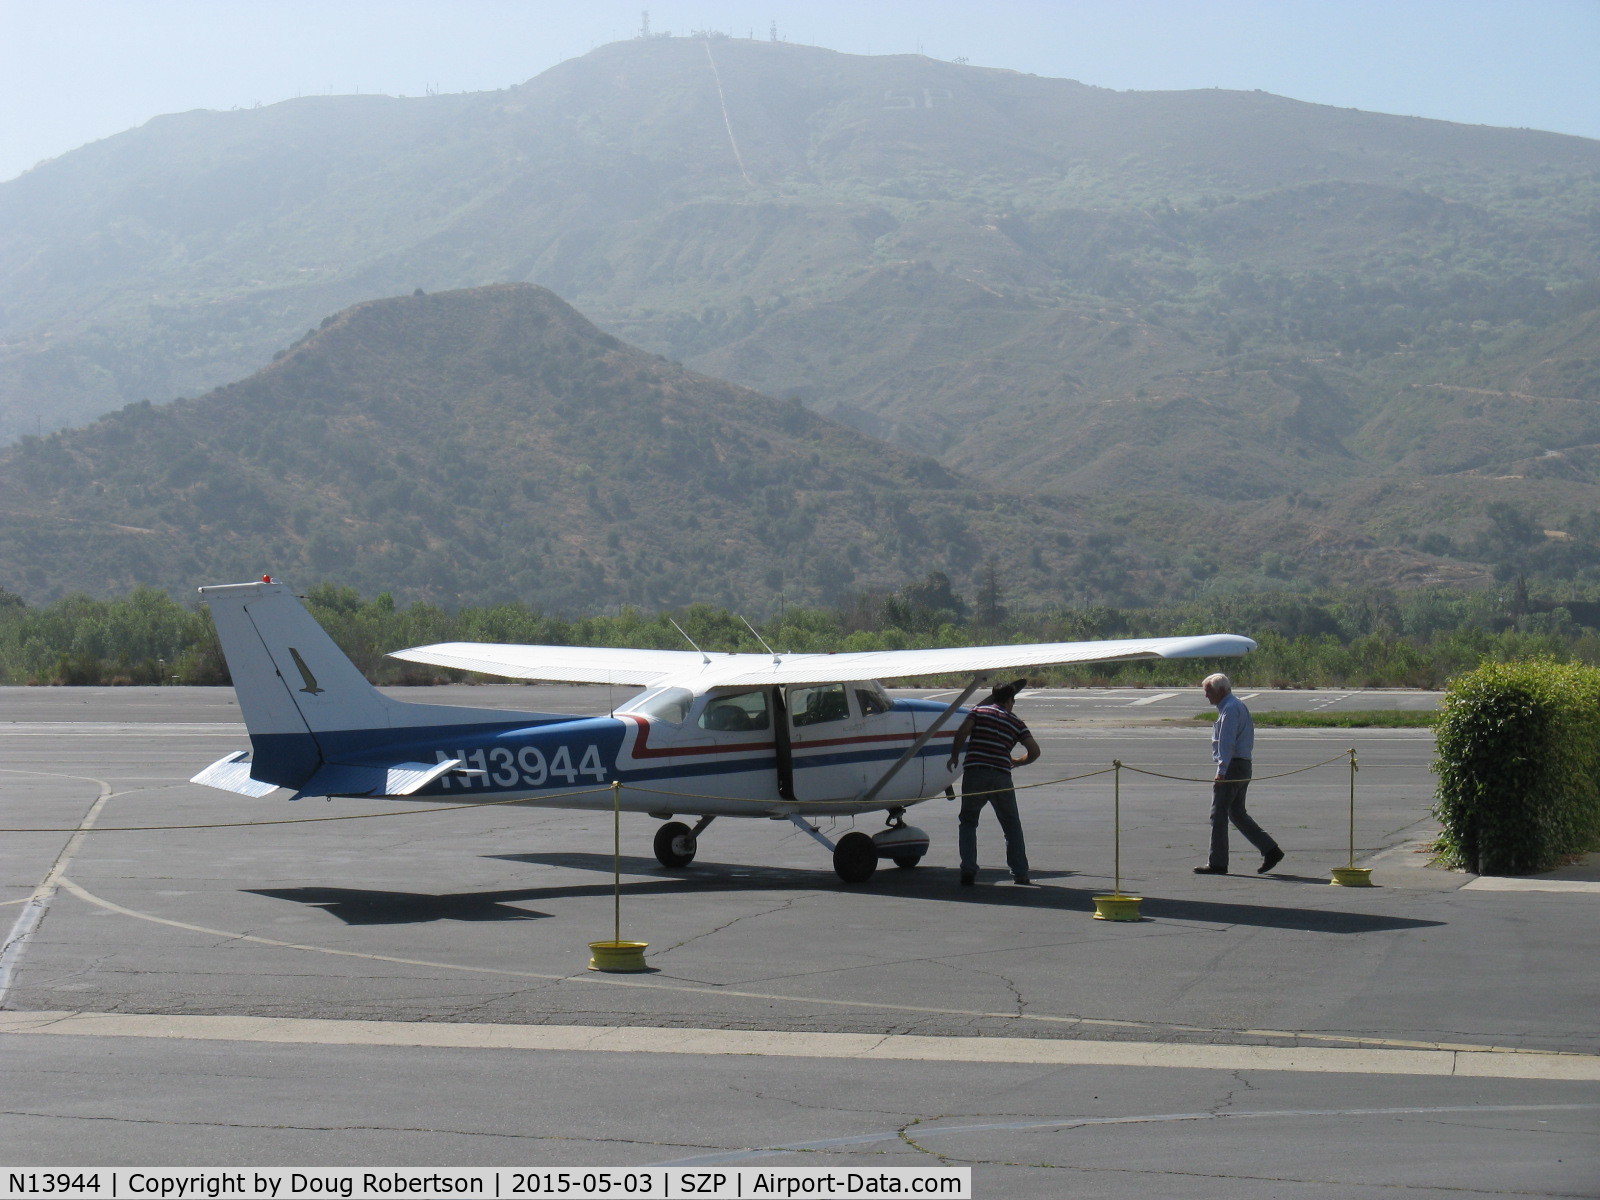 N13944, 1974 Cessna 172M C/N 17263047, 1974 Cessna 172M, Lycoming O-320-E2D 150 Hp, at fuel dock